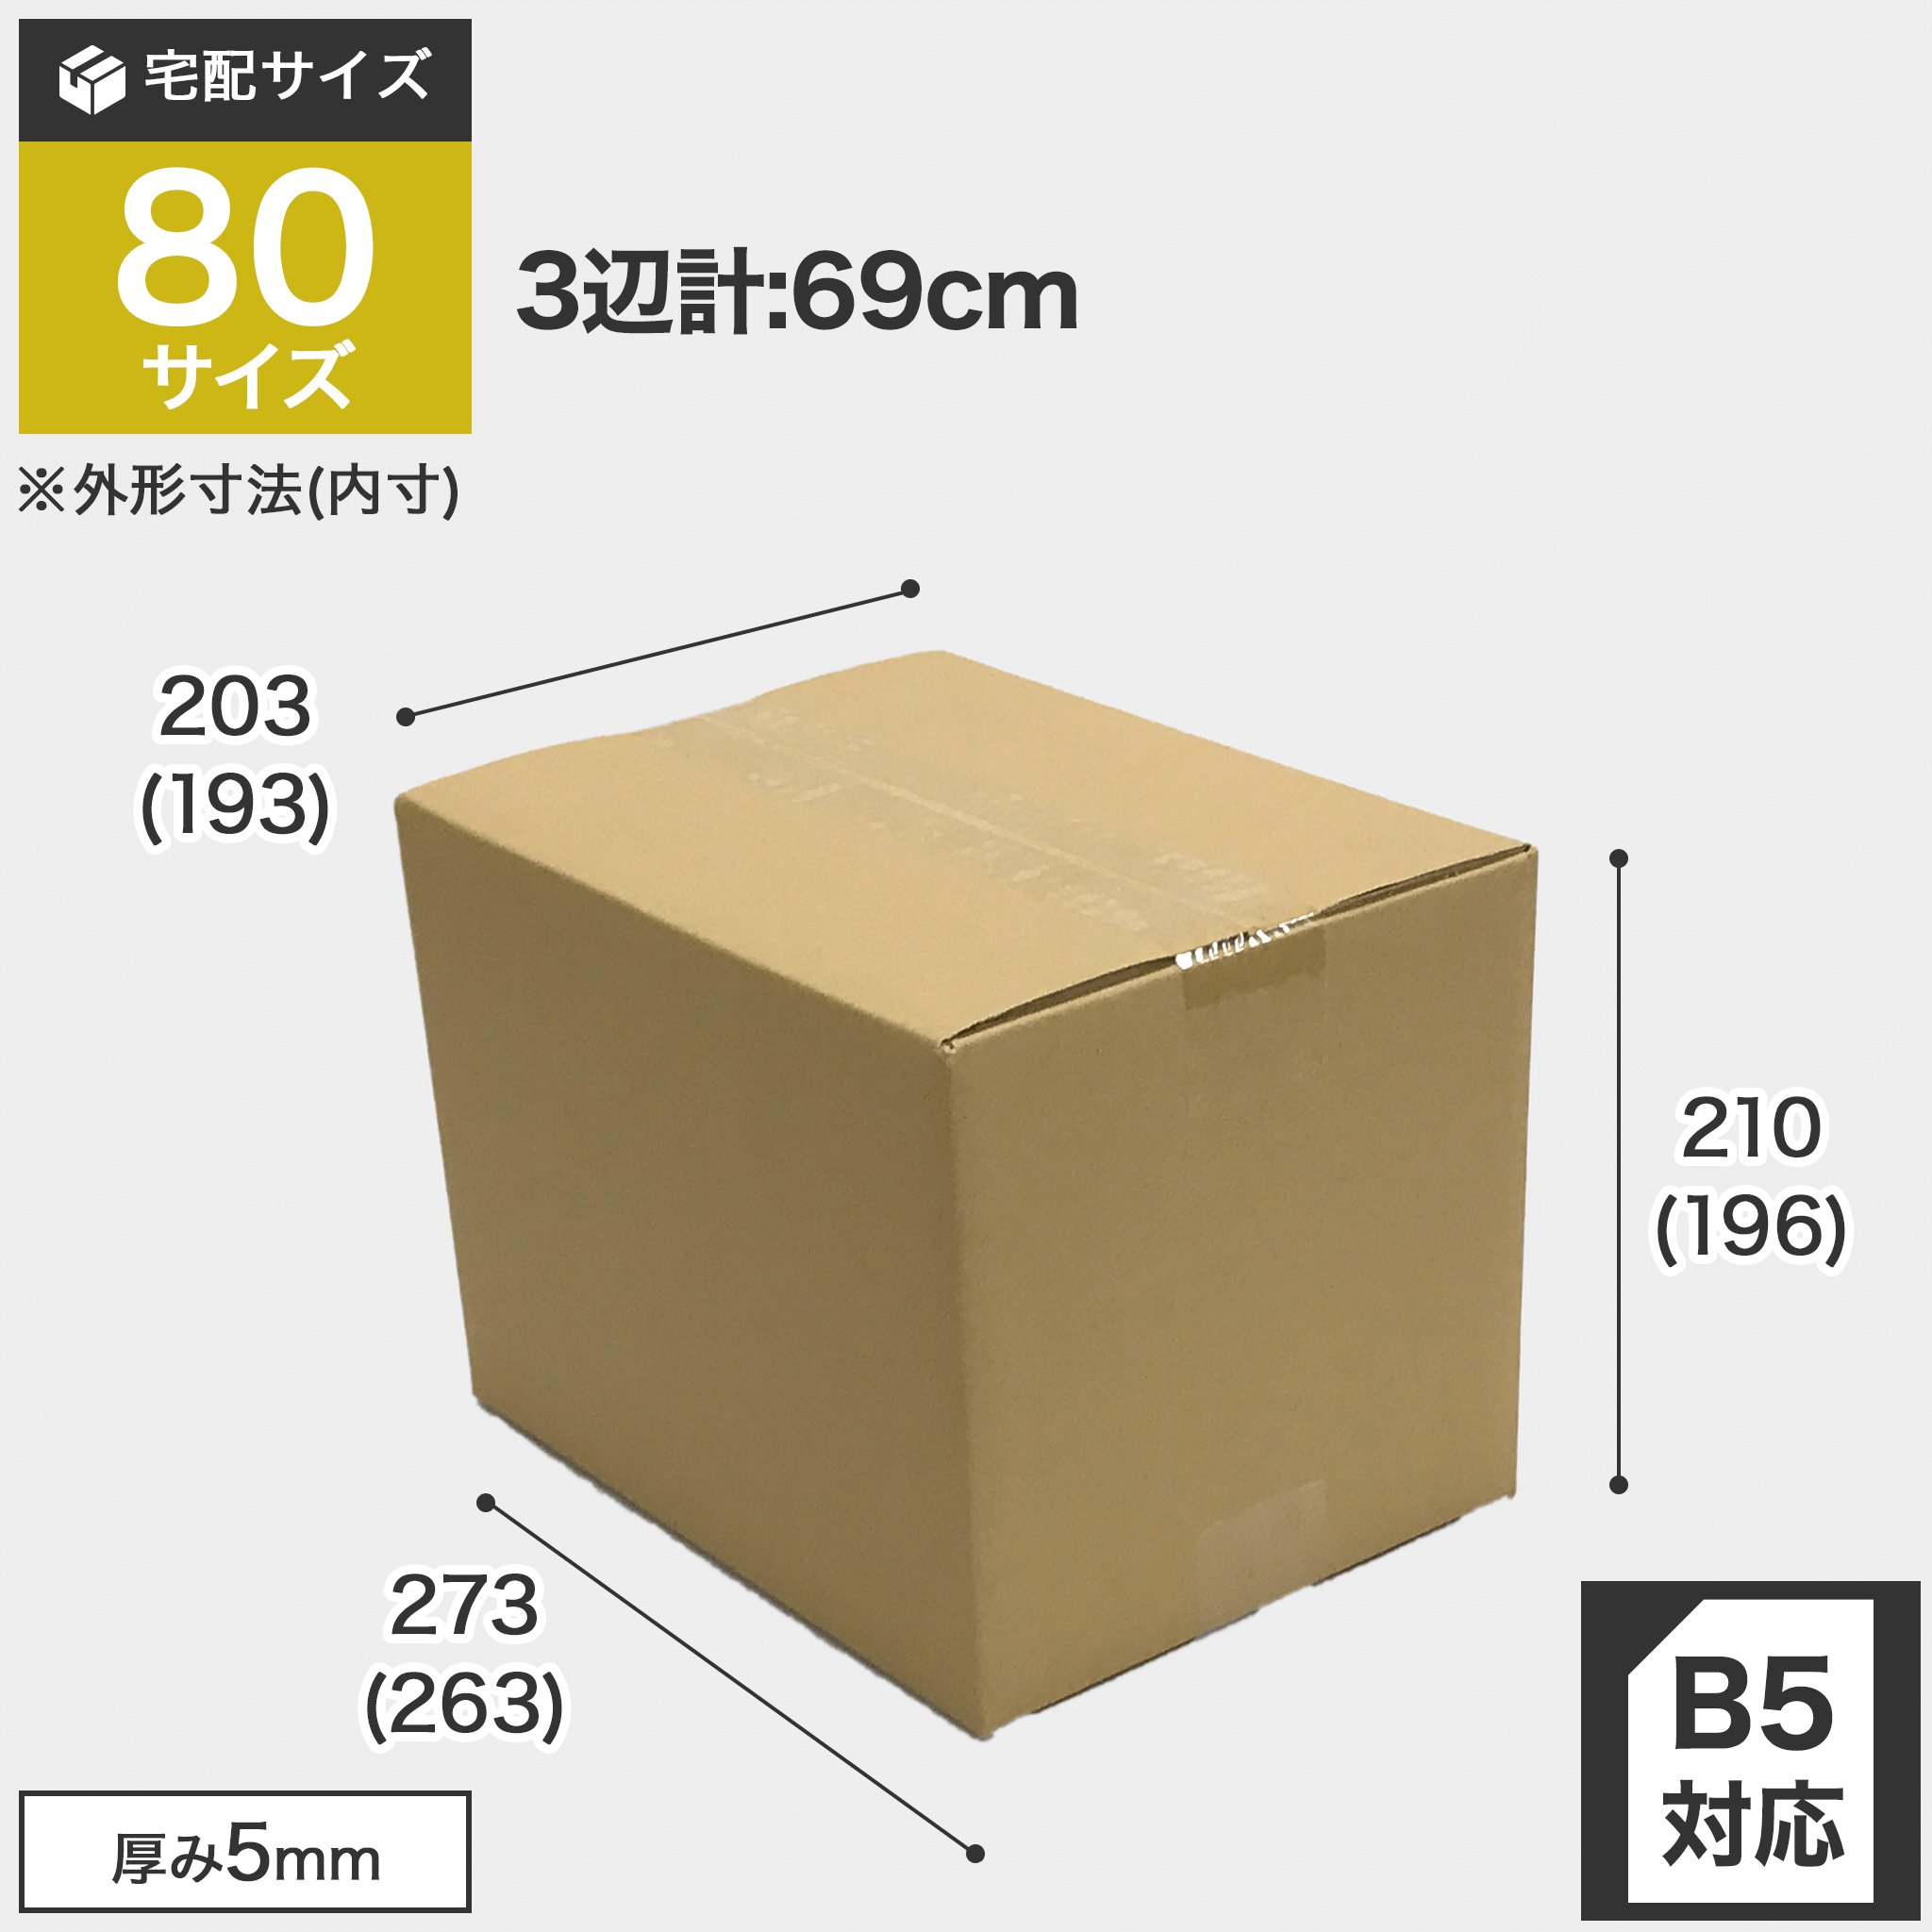 宅配80サイズのダンボール箱 3辺合計約69cm